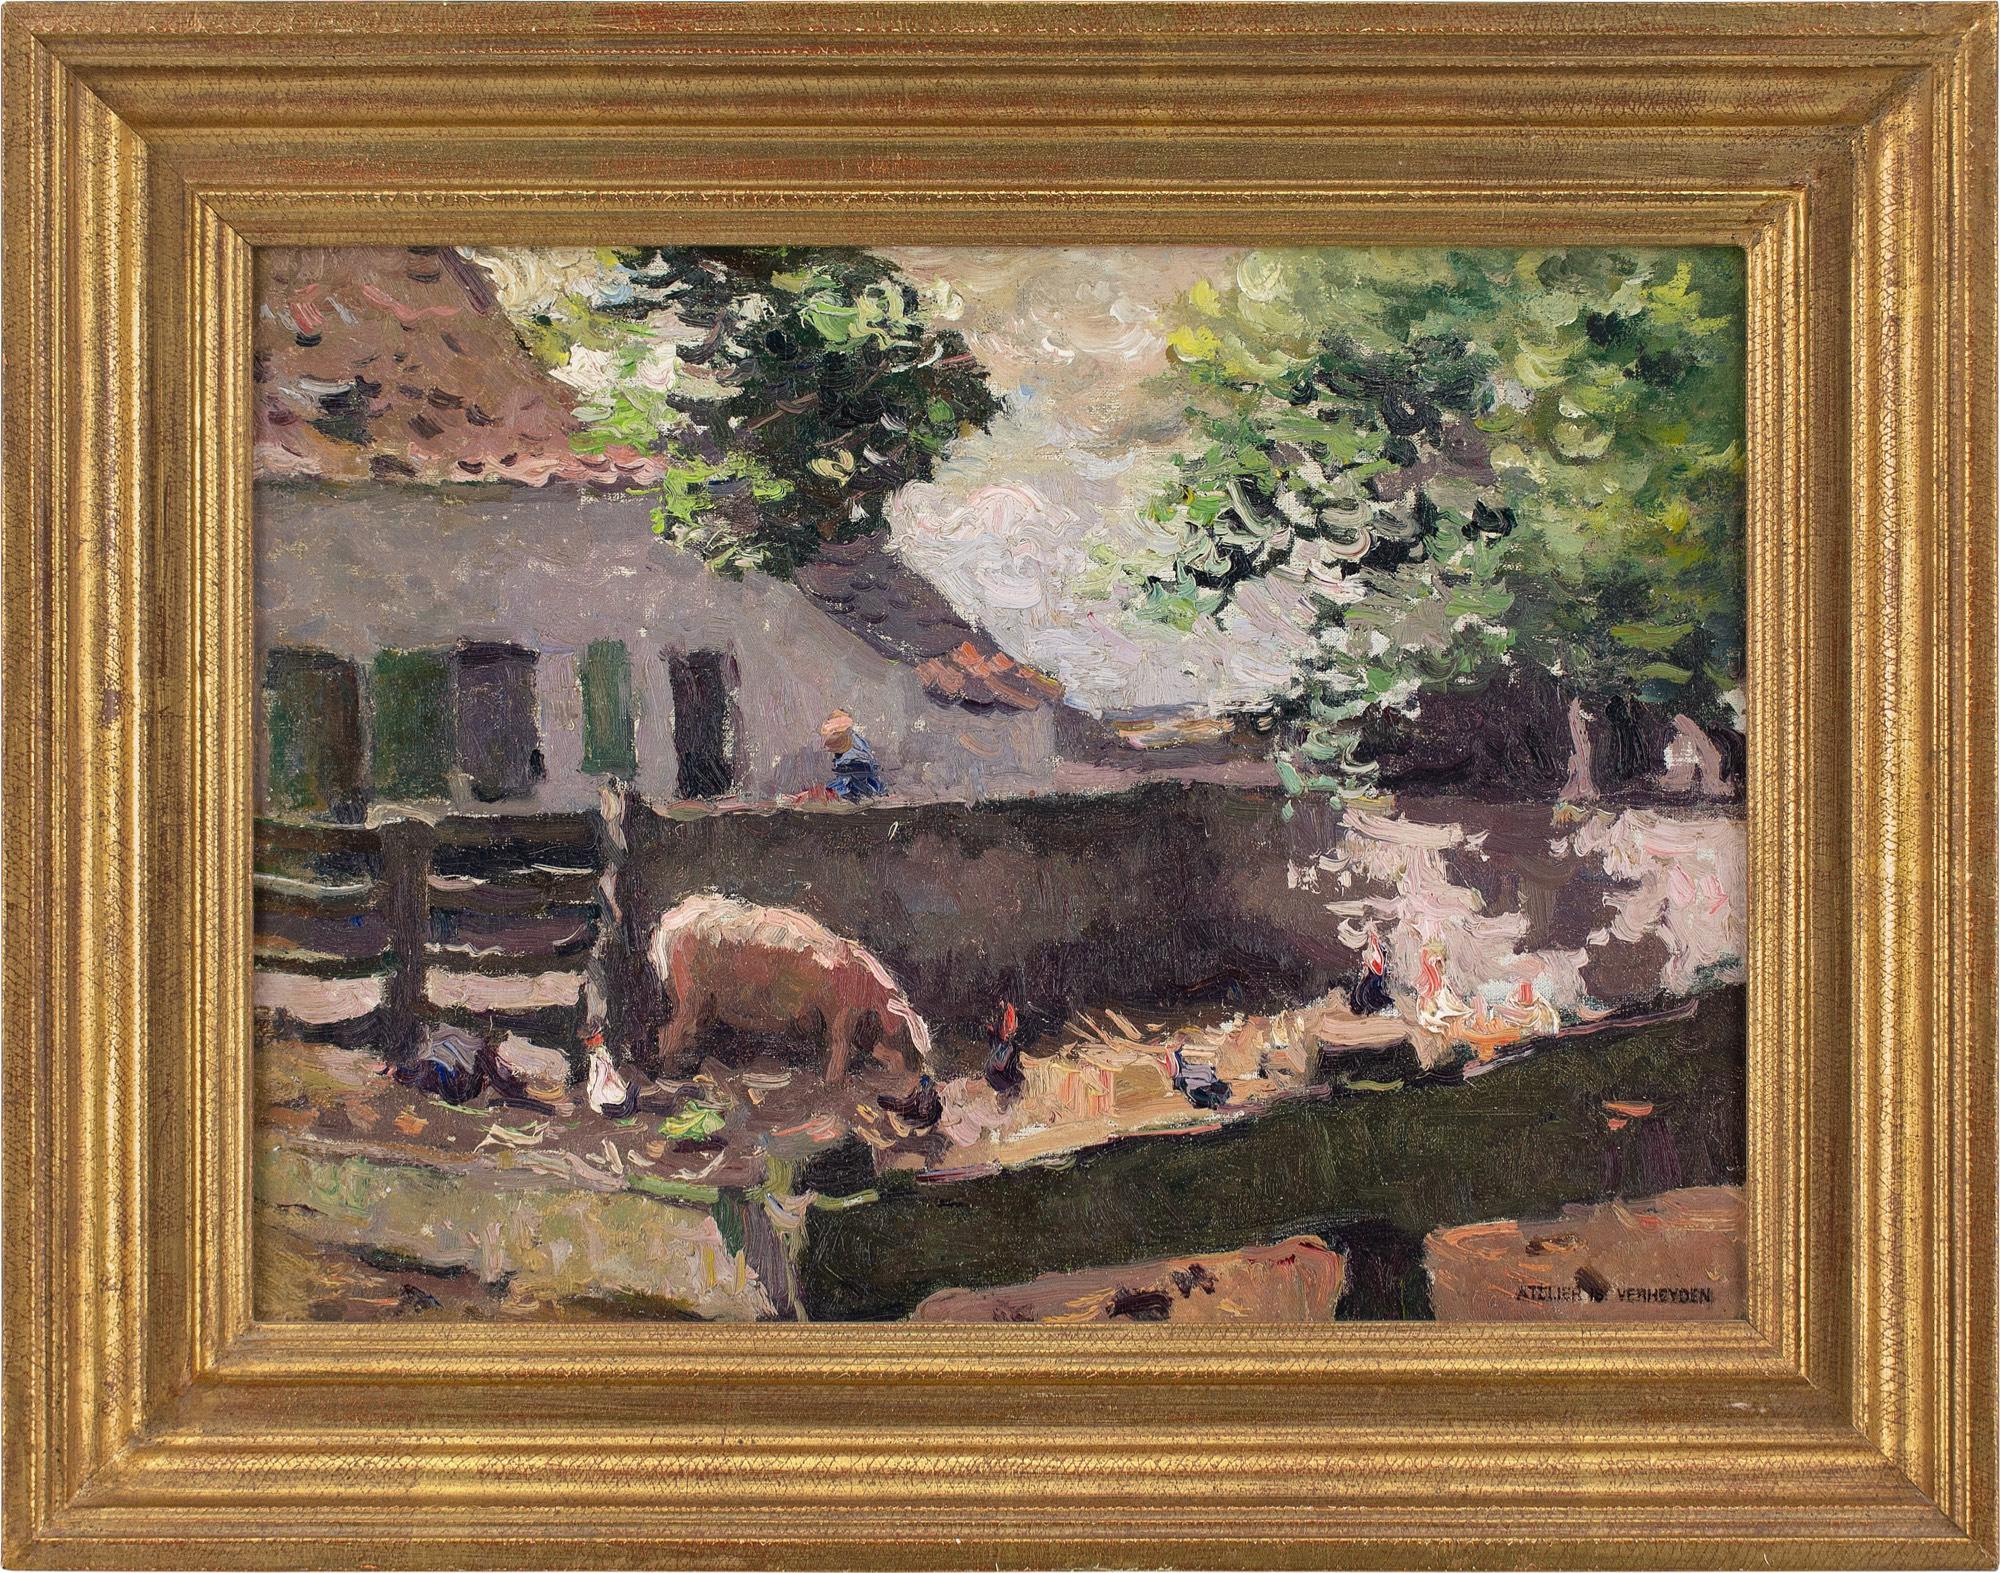 Dieses Ölgemälde des belgischen Künstlers Isidore Verheyden (1846-1905) aus dem späten 19. Jahrhundert stellt einen kleinen Bauernhof dar.

Schnüffelnd und grunzend im schmutzigen Heu, ein pausbäckiges Schwein mit einer schlammigen Nase. Der König